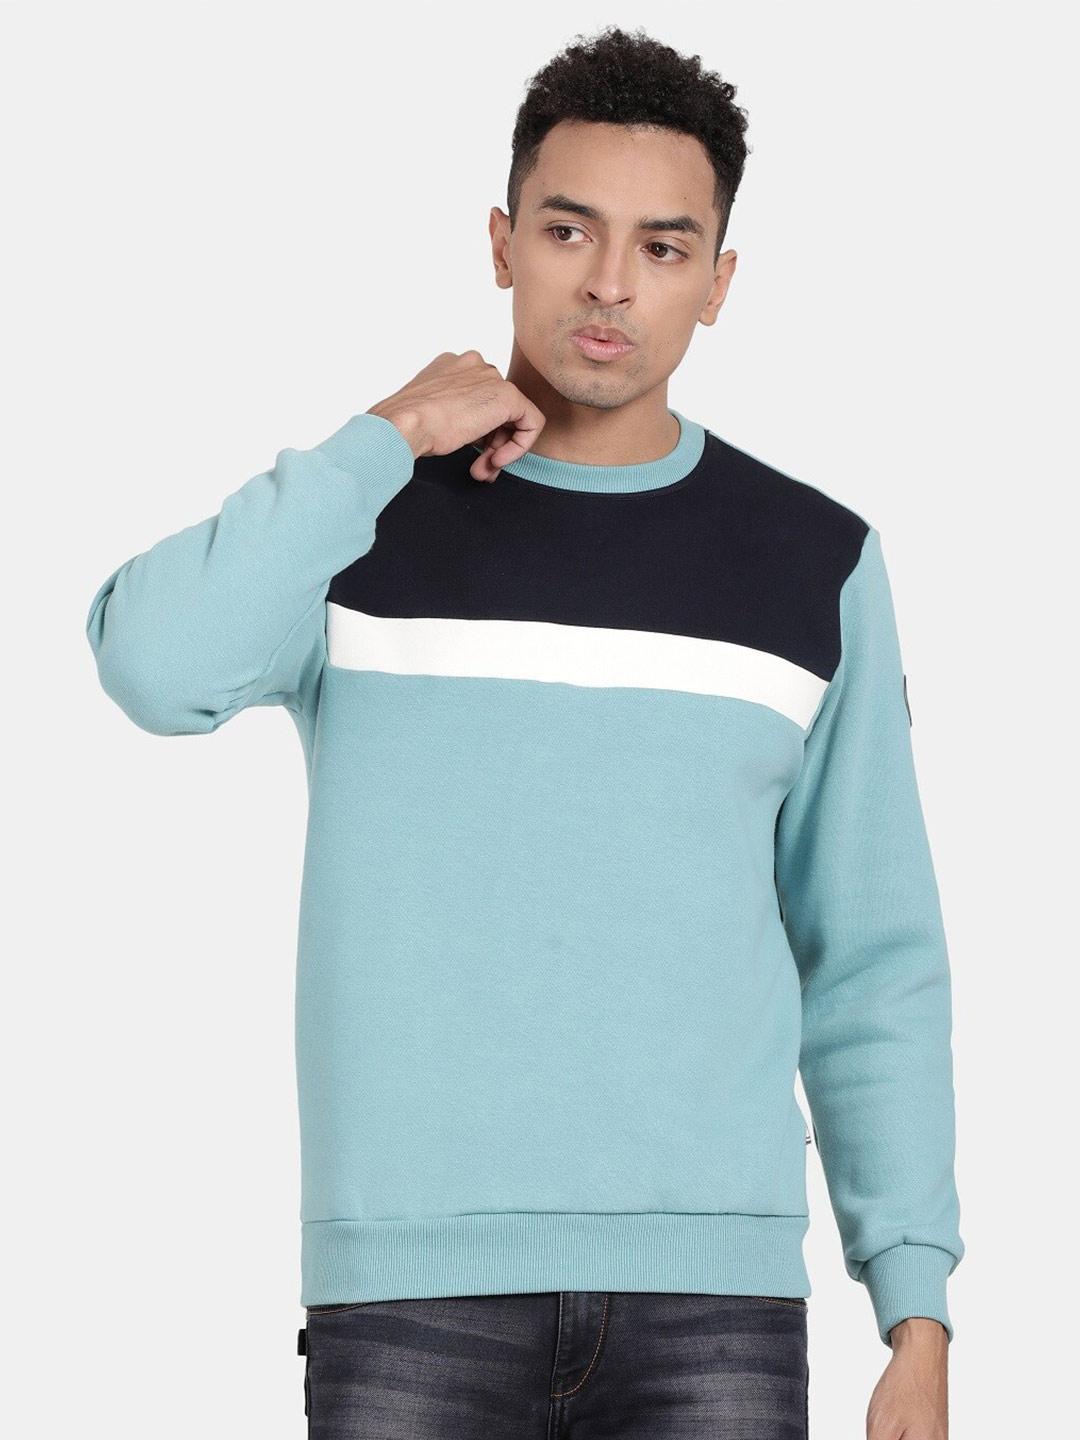 t-base colourblocked round neck long sleeve sweatshirt